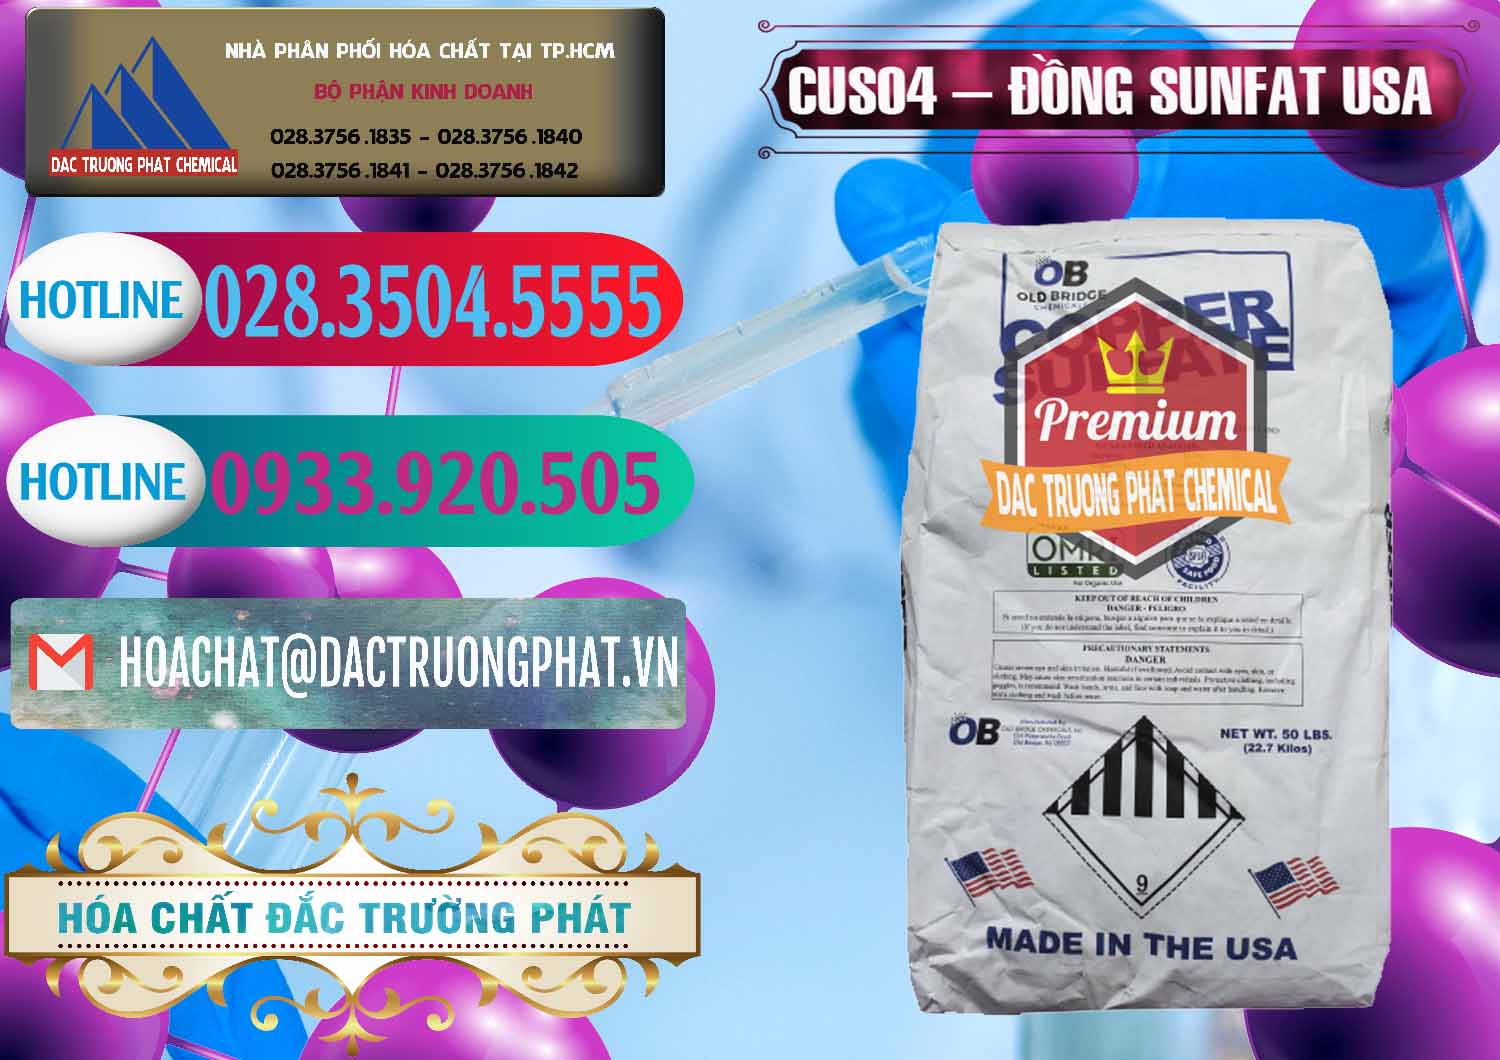 Cty chuyên cung cấp & bán CuSO4 – Đồng Sunfat Mỹ USA - 0479 - Chuyên cung cấp - bán hóa chất tại TP.HCM - truongphat.vn